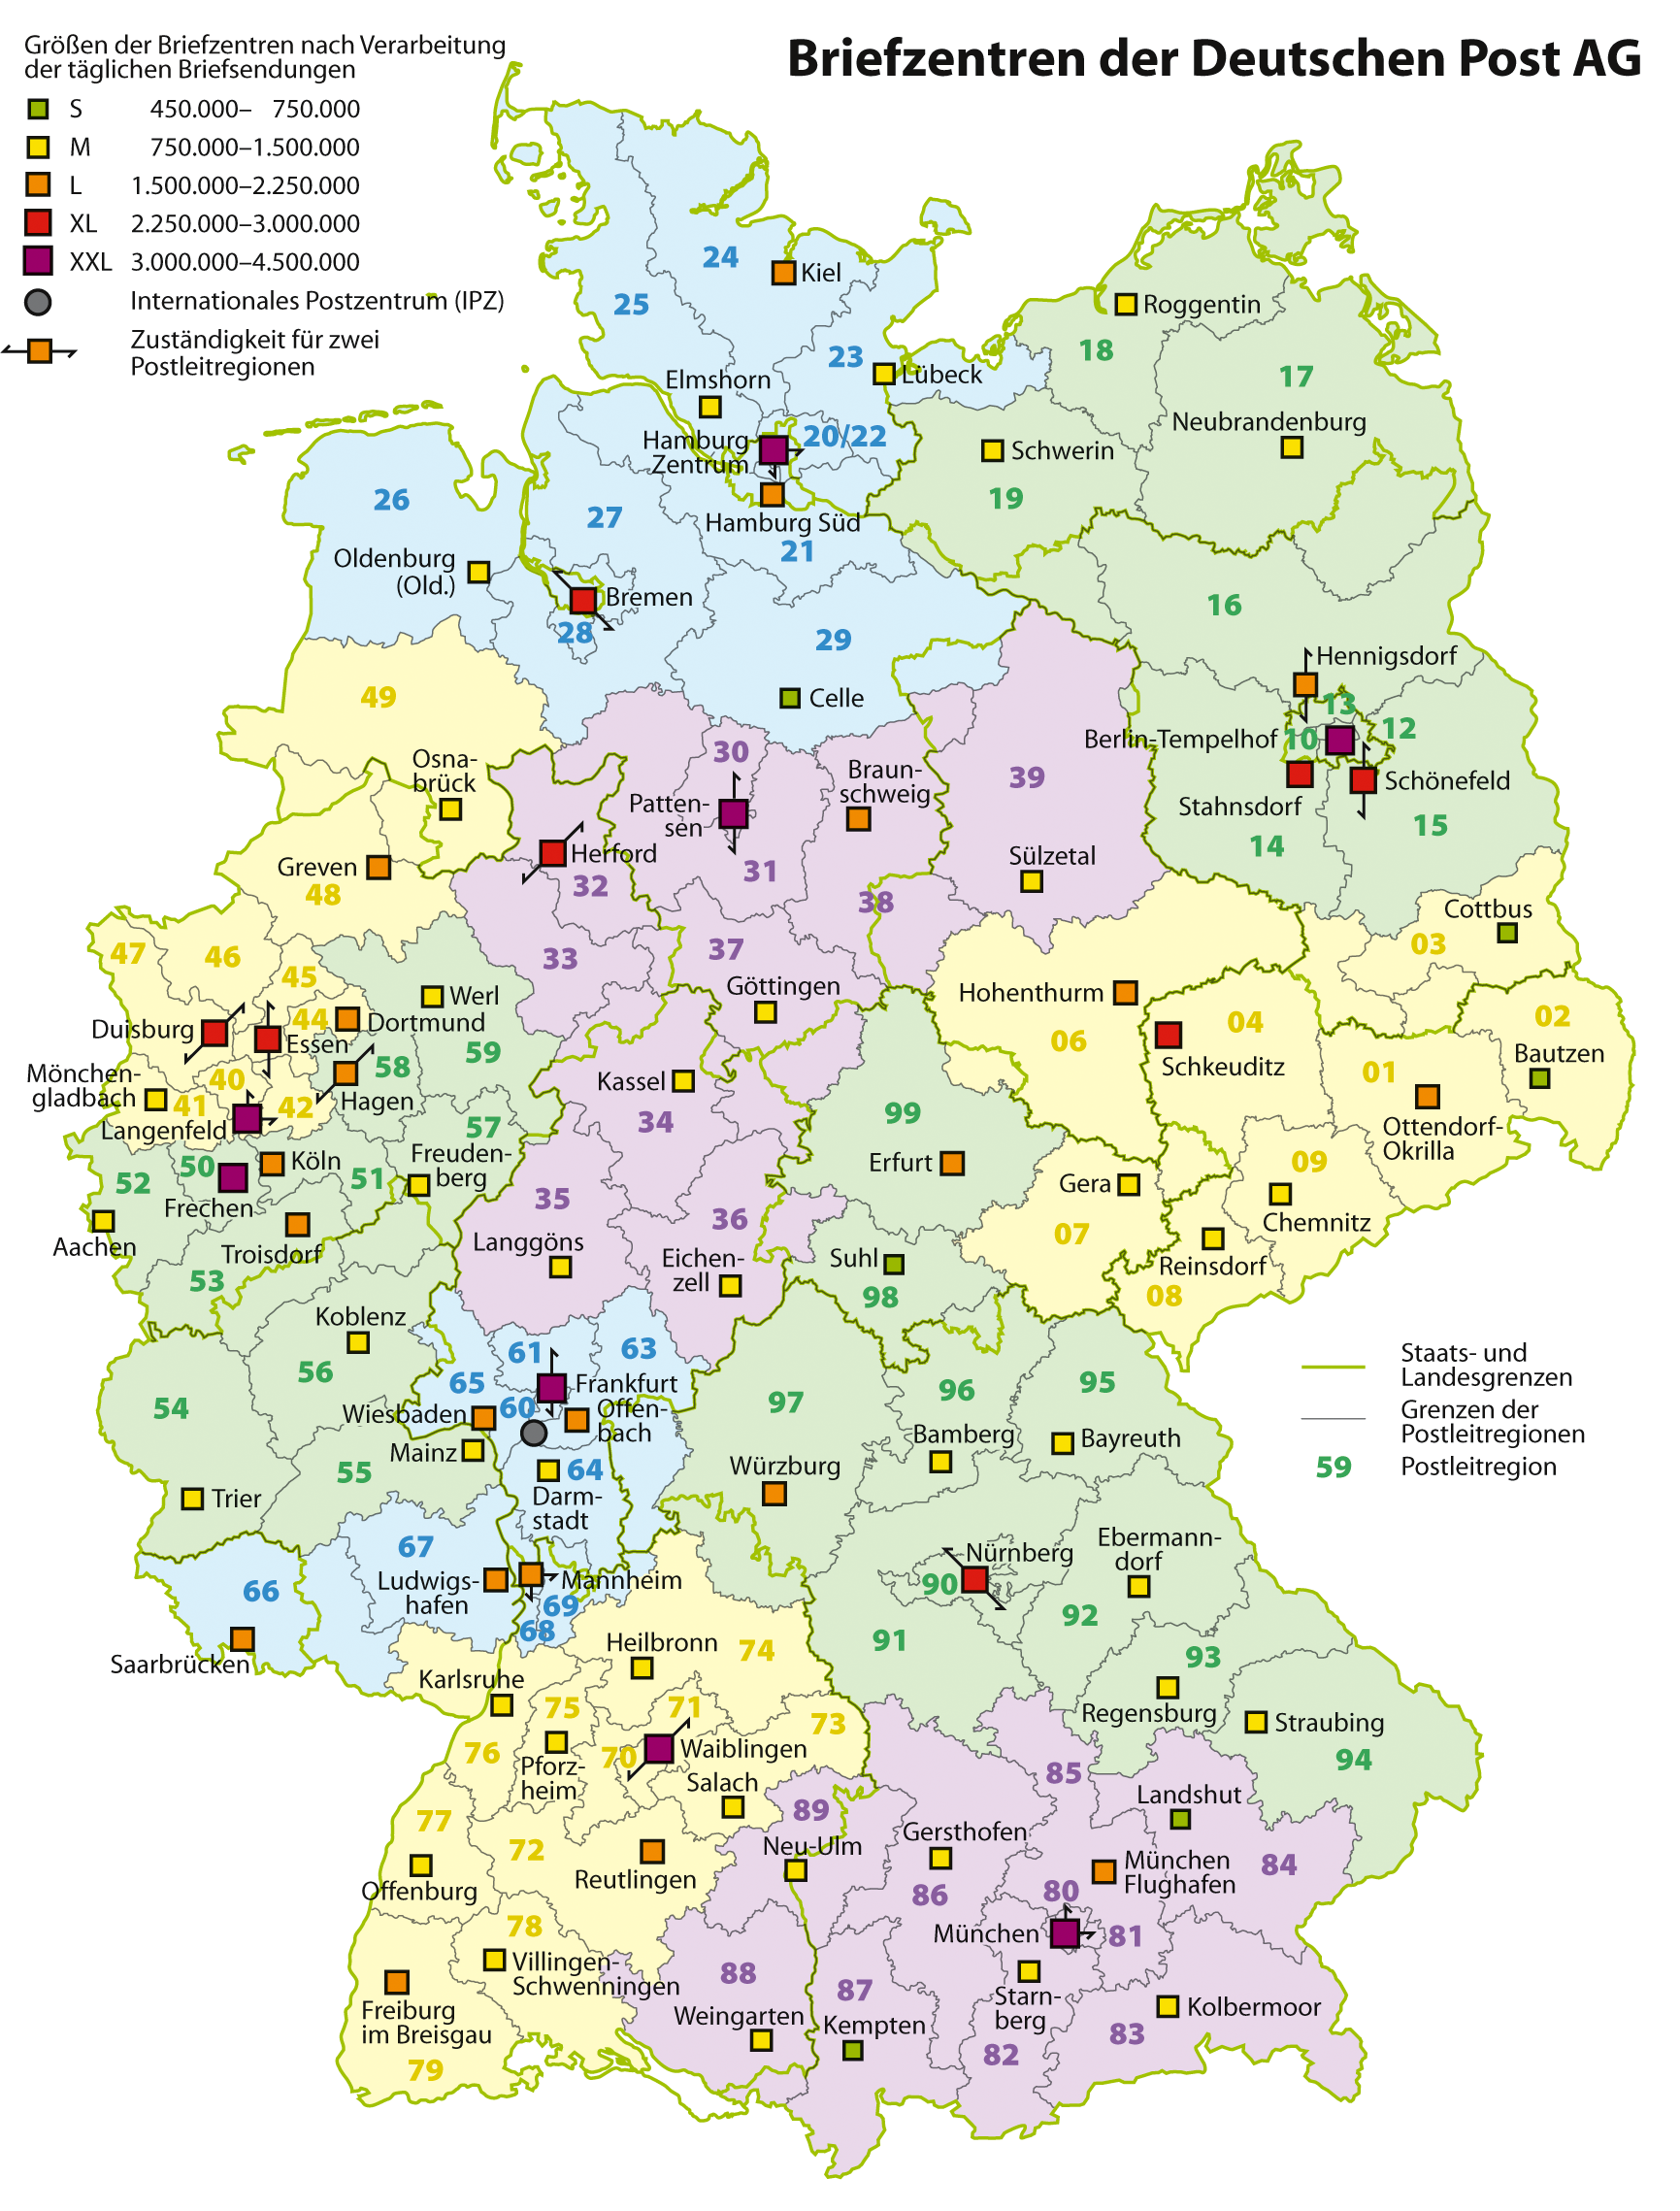 File:Karte Briefzentren Deutsche Post AG.png - Wikimedia Commons